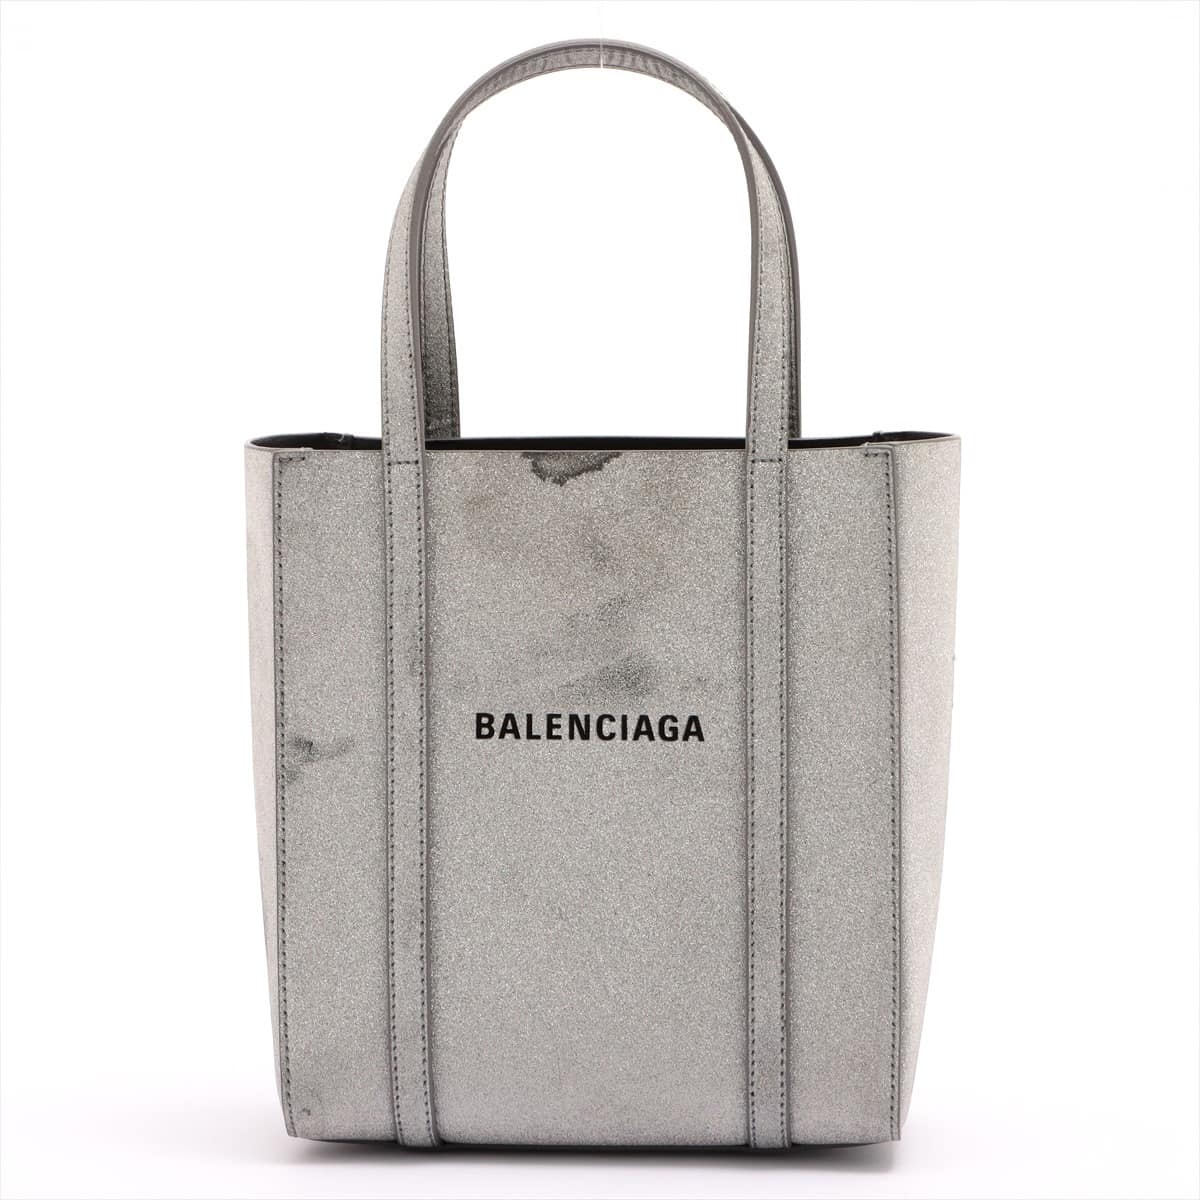 Balenciaga Everyday Tote XXS Glitter 2way handbag Silver 551815